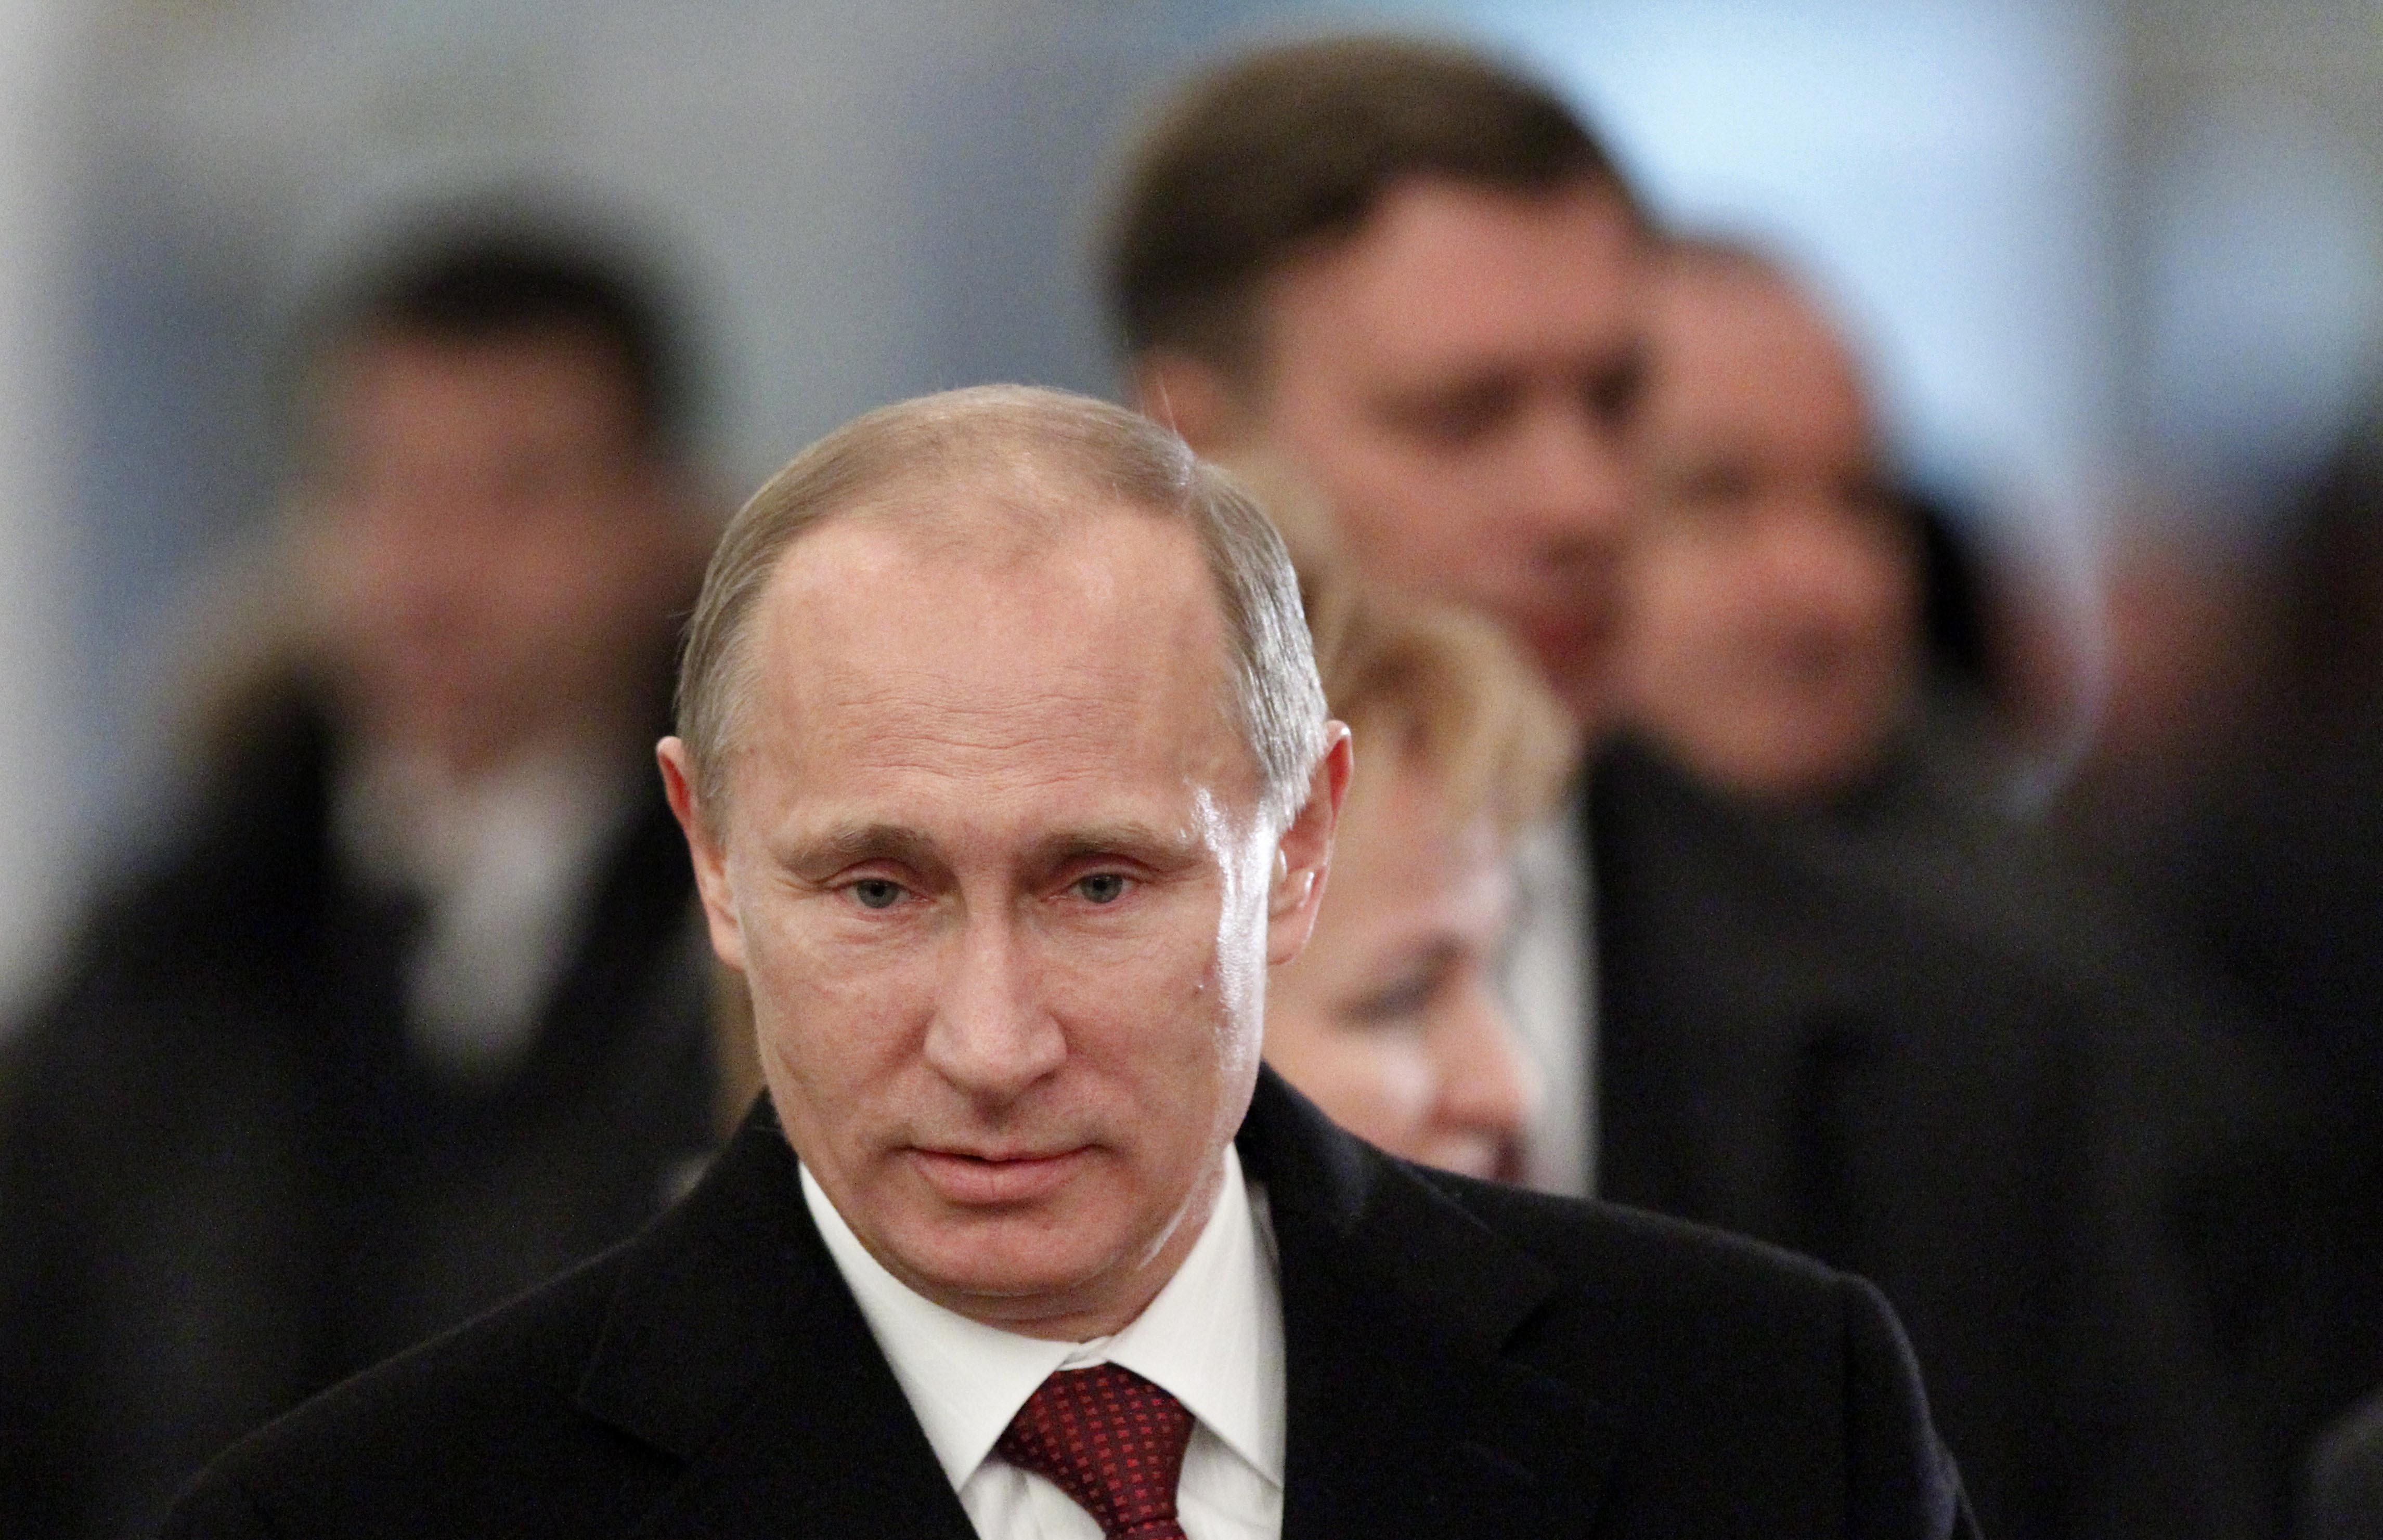 Partiet behöver stöd från Putins parti "Enade Ryssland" för attförslaget ska bli verklighet